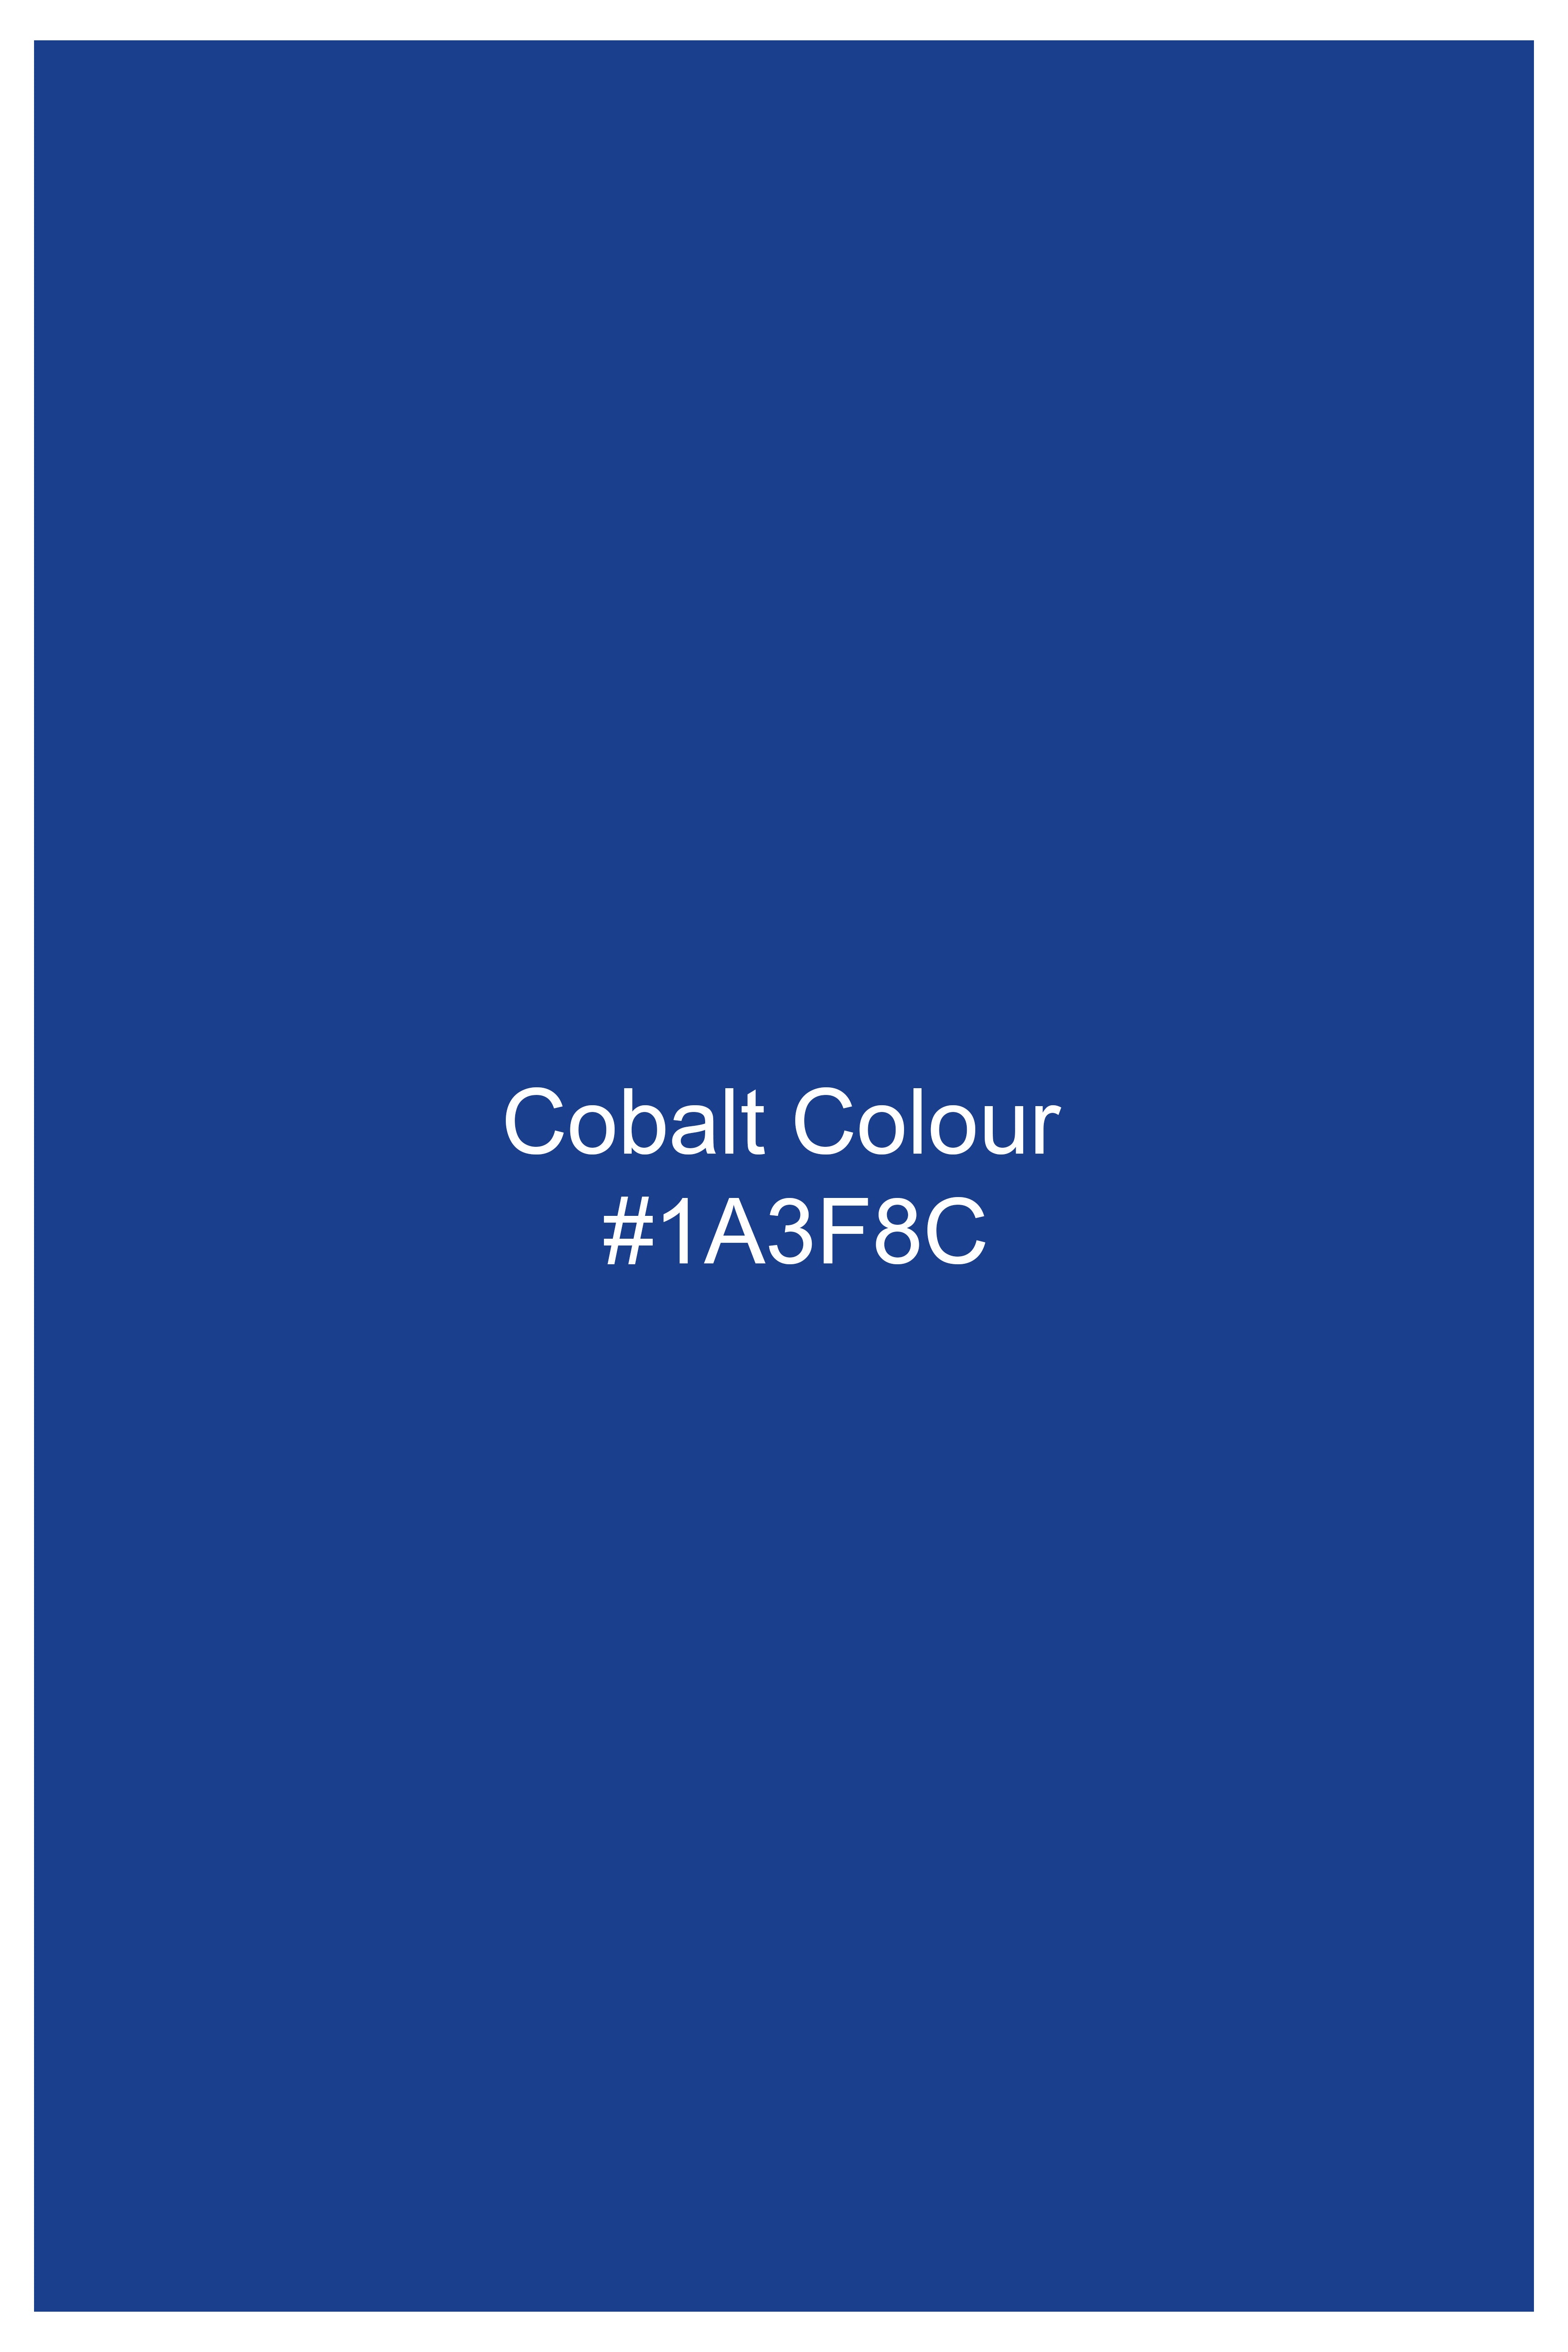 Cobalt Blue Corduroy Premium Cotton Blazer